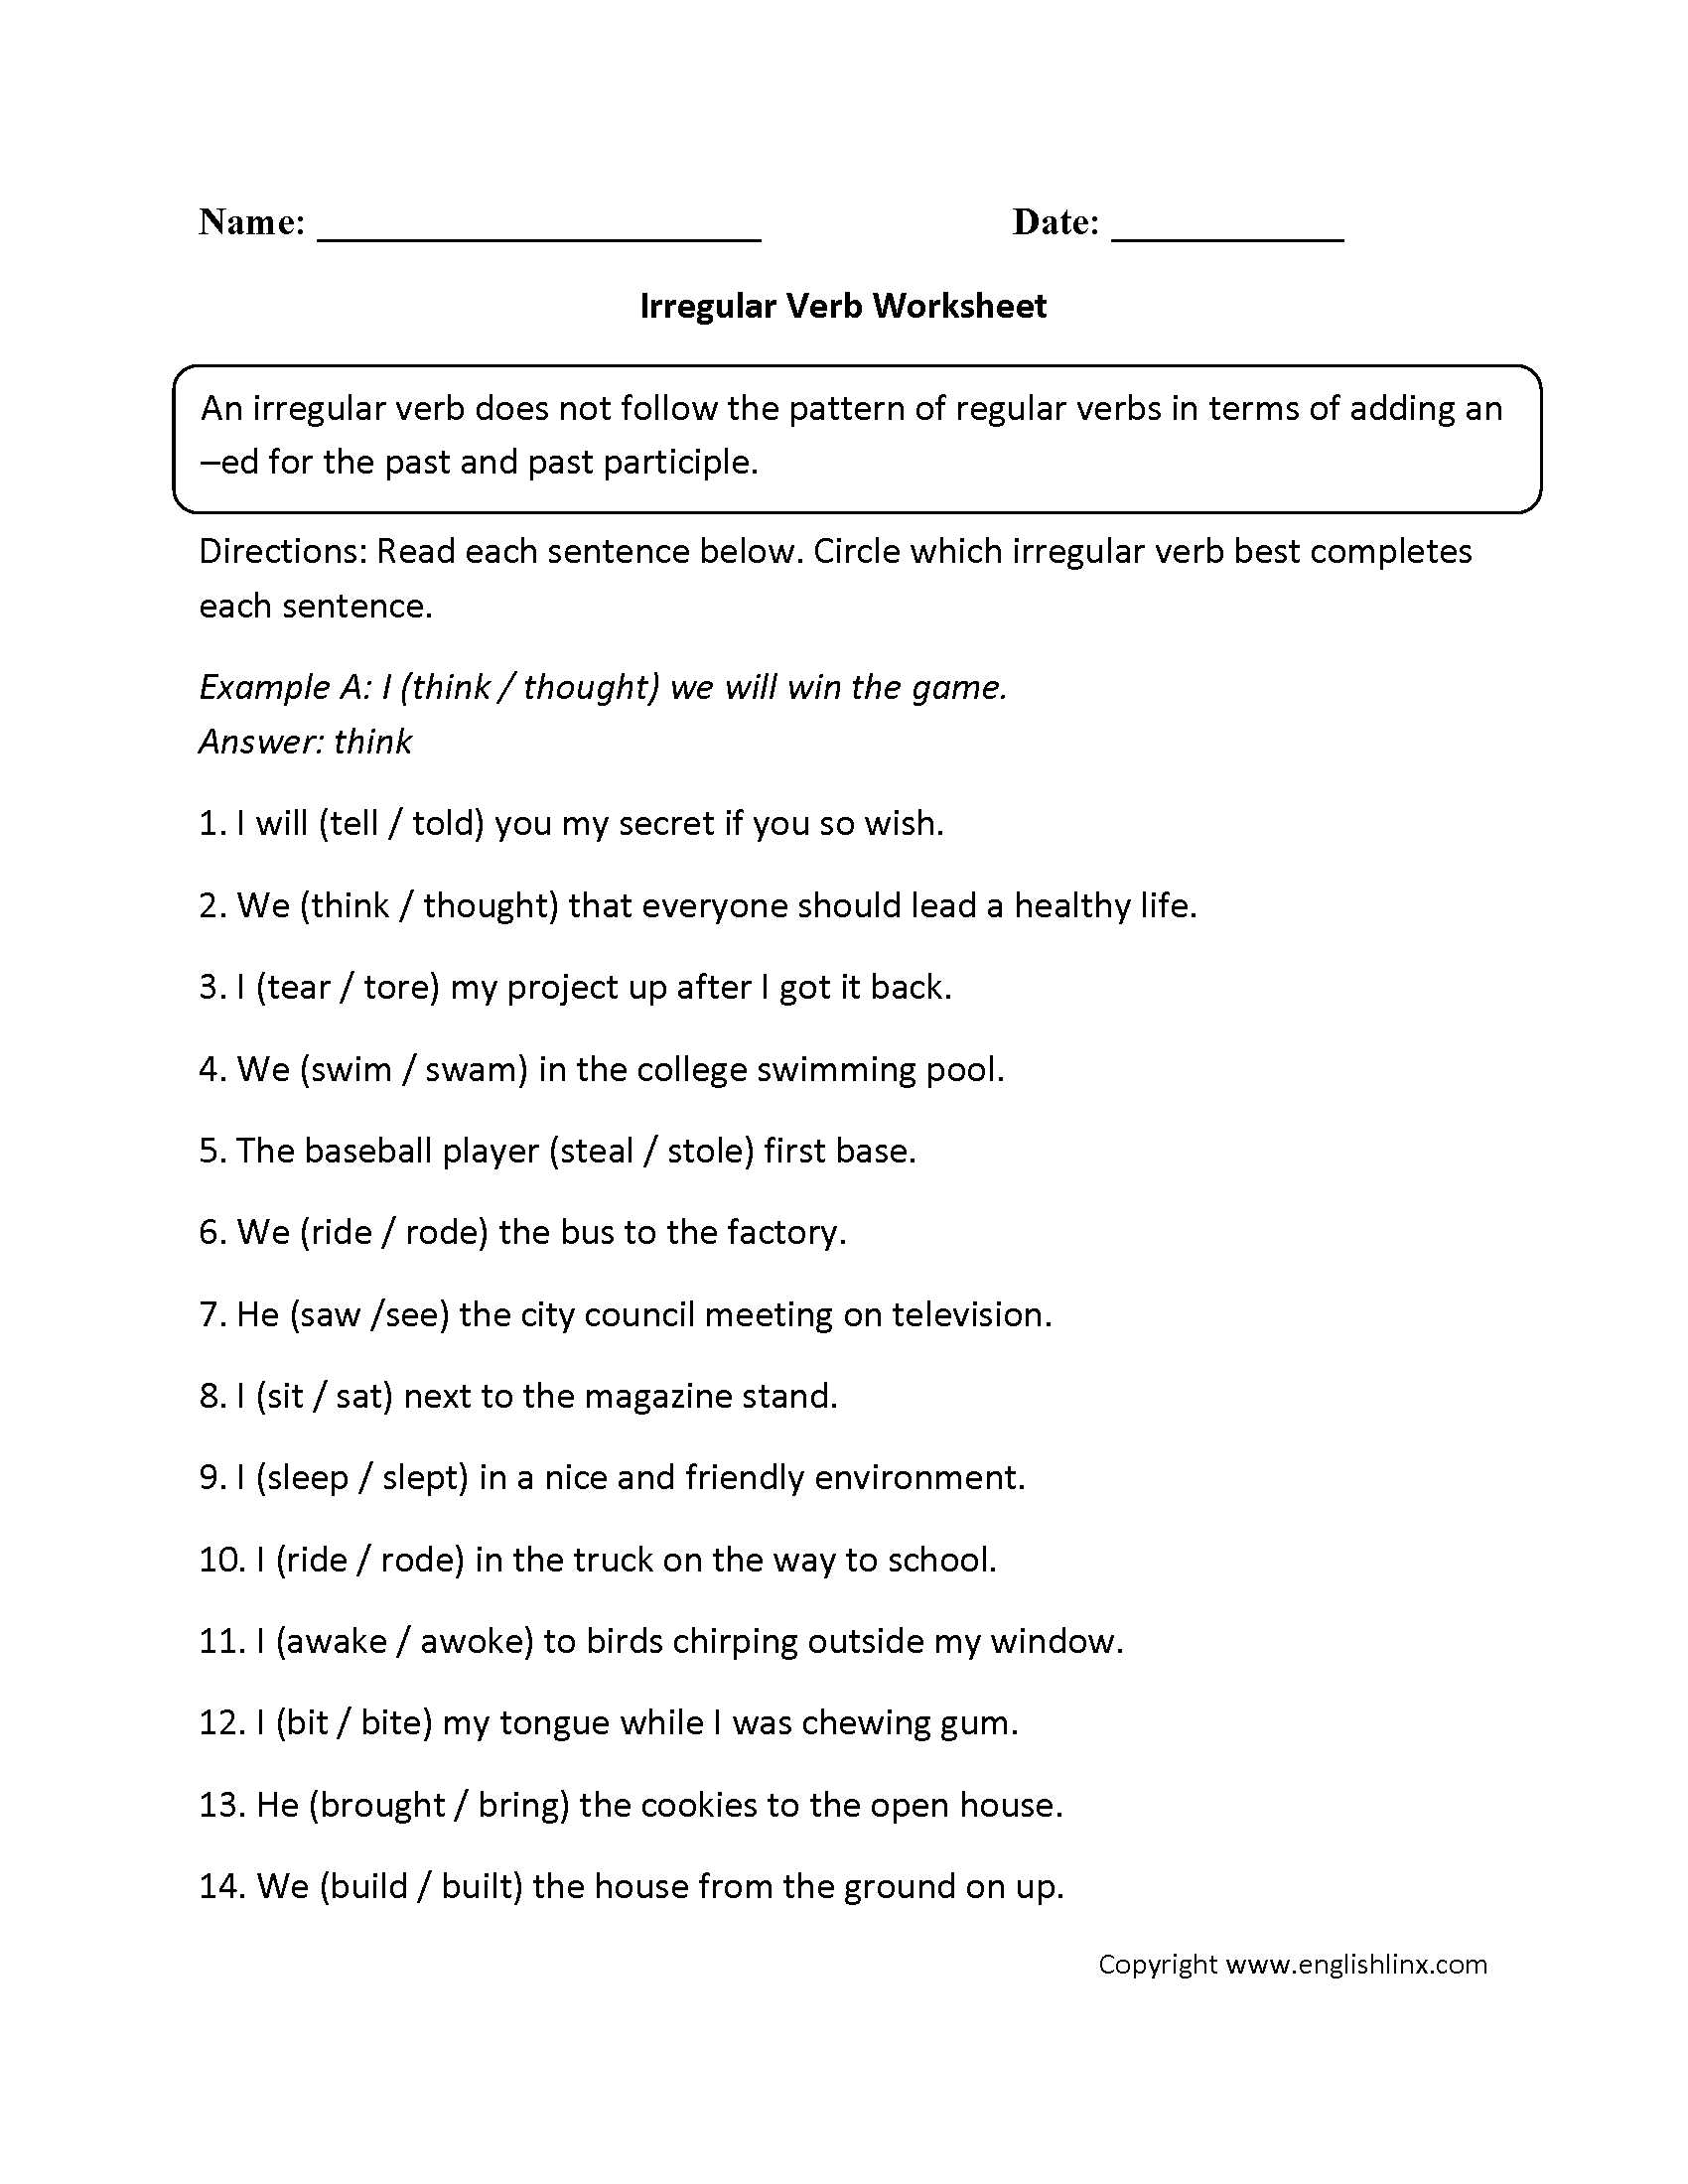 Verbs Worksheets for Grade 1 and Irregular Verbs Worksheets for 1st Grade